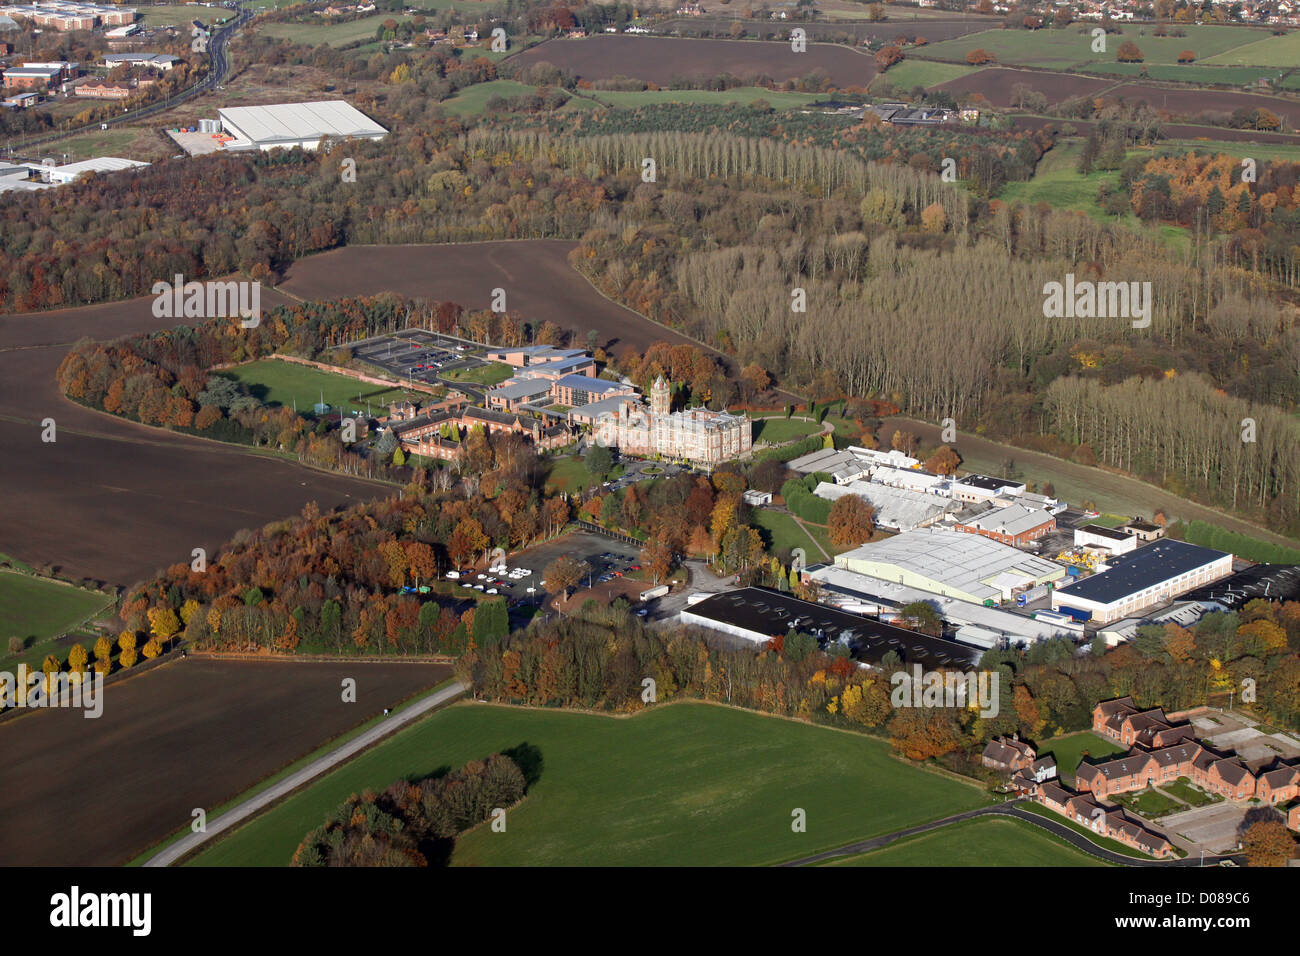 Vista aérea de Crewe Hall Hotel y alrededores en Cheshire Foto de stock